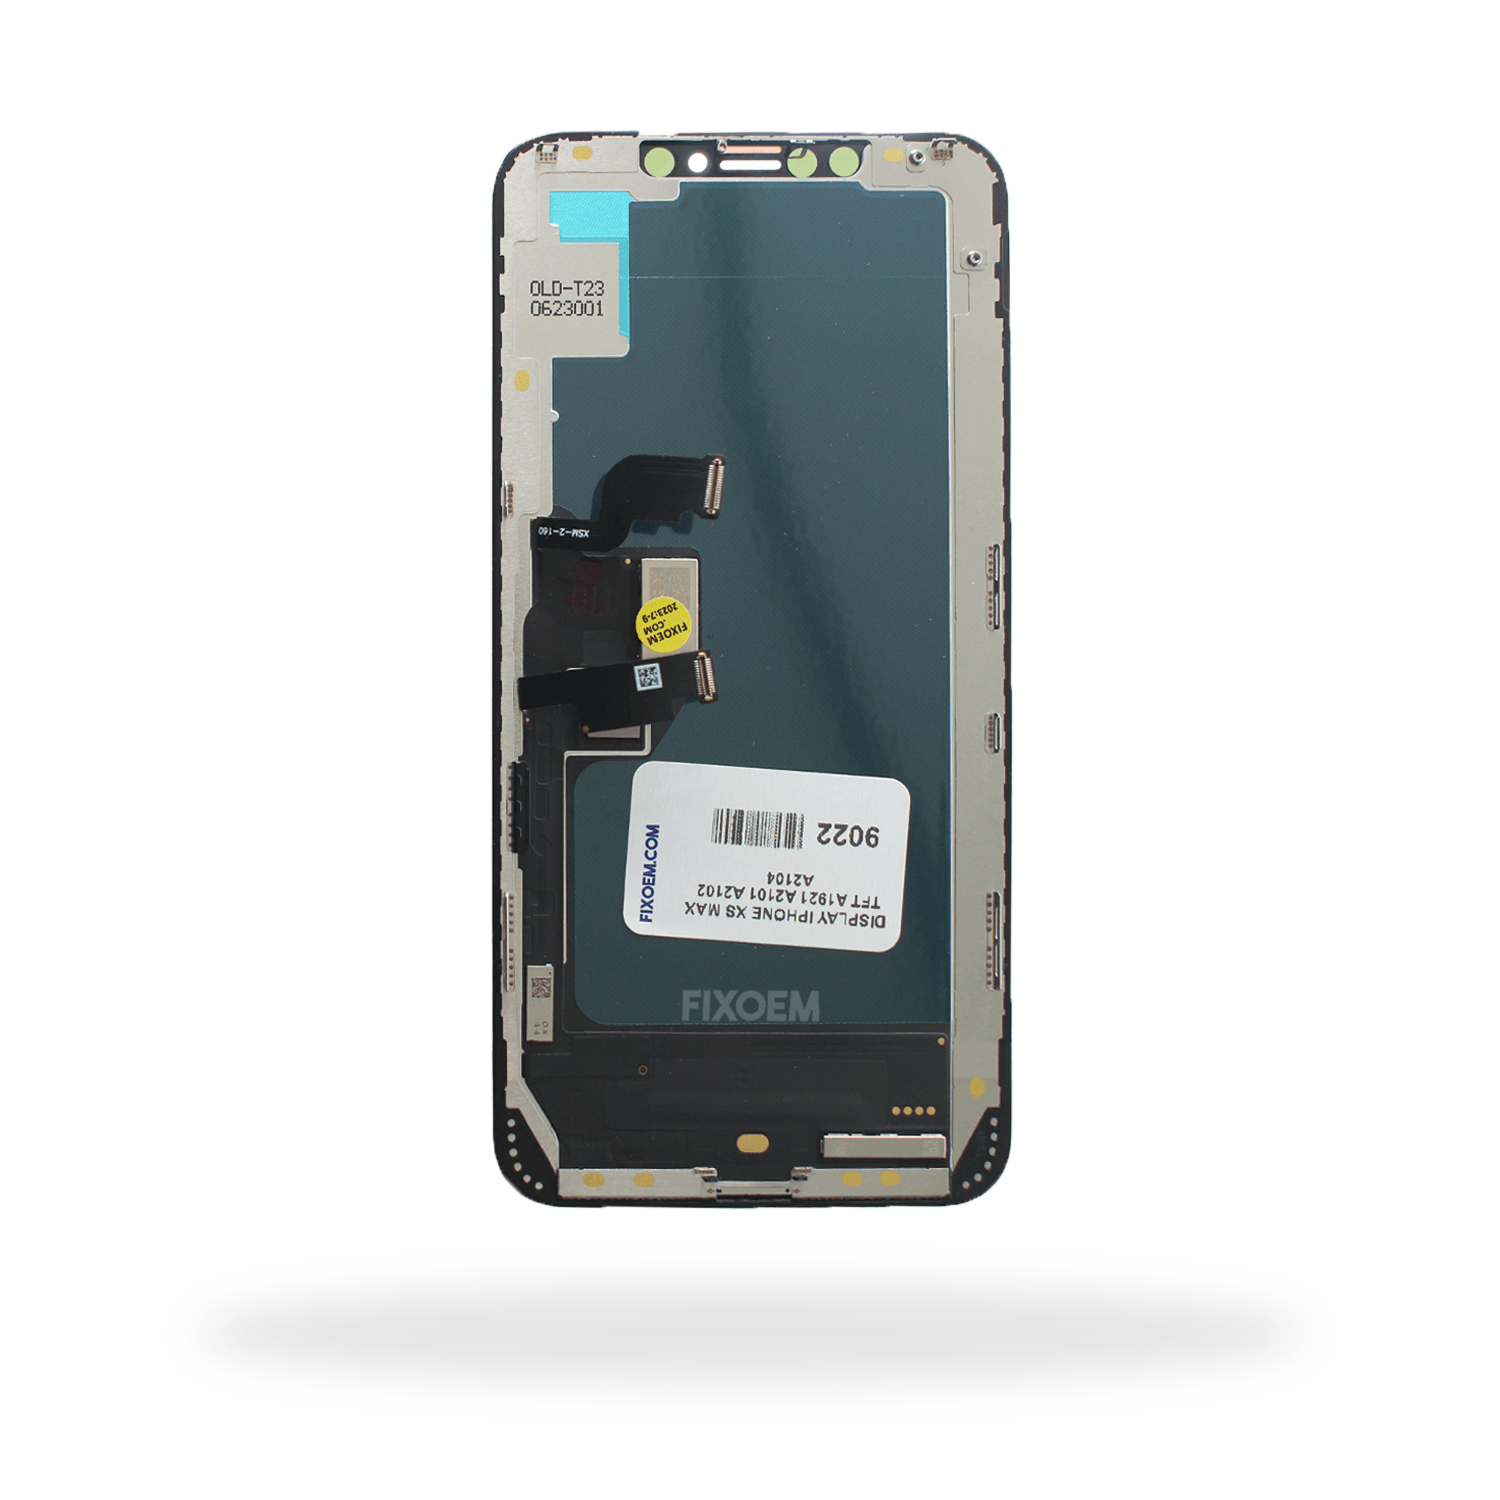 Display Iphone Xs Max A1921 A2101 A2102 A2104 a solo $ 340.00 Refaccion y puestos celulares, refurbish y microelectronica.- FixOEM